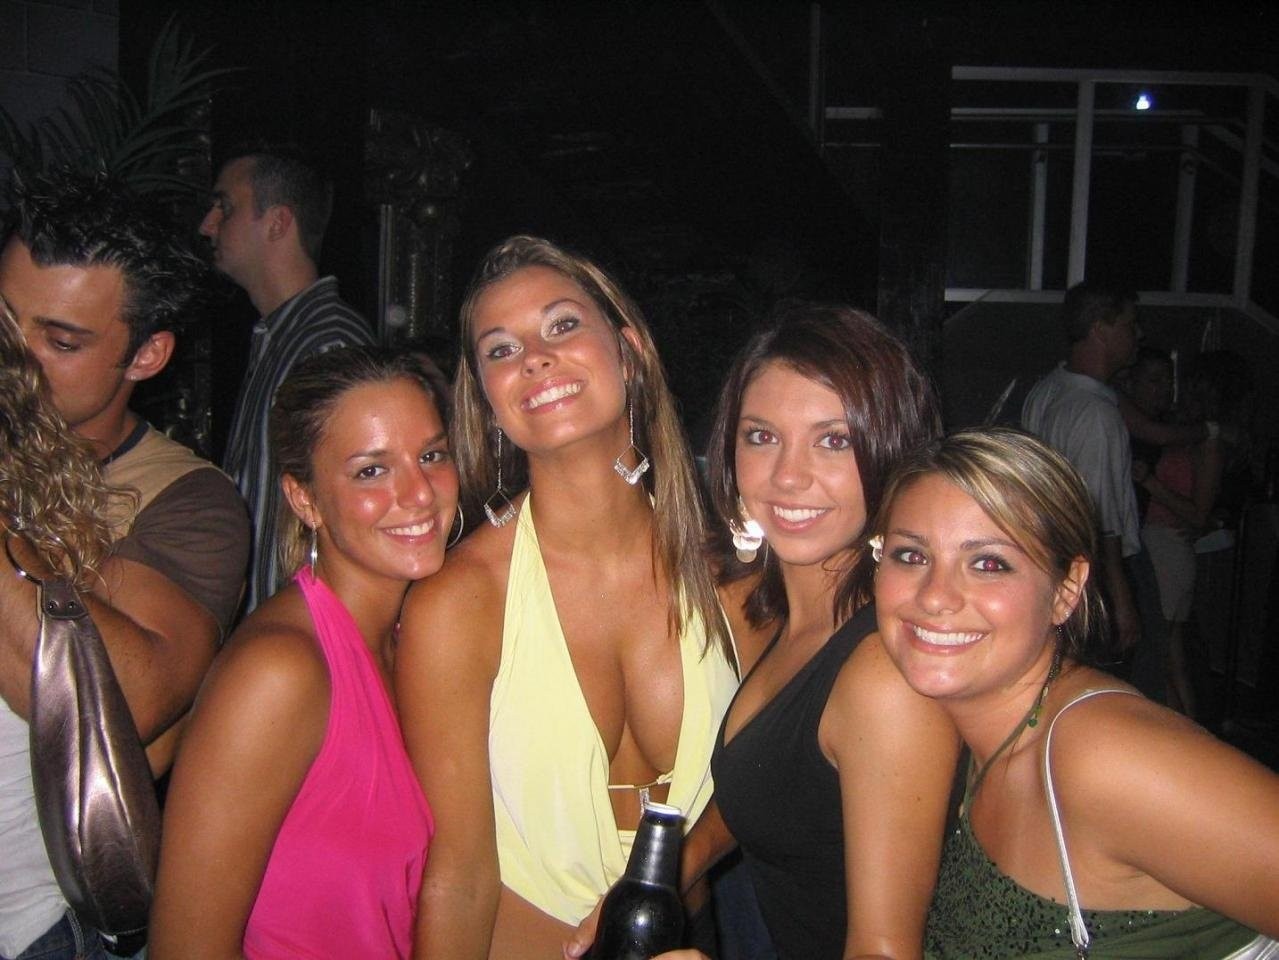 Betrunkene nackte College-Mädchen feiern und zeigen freche Titten
 #76400933